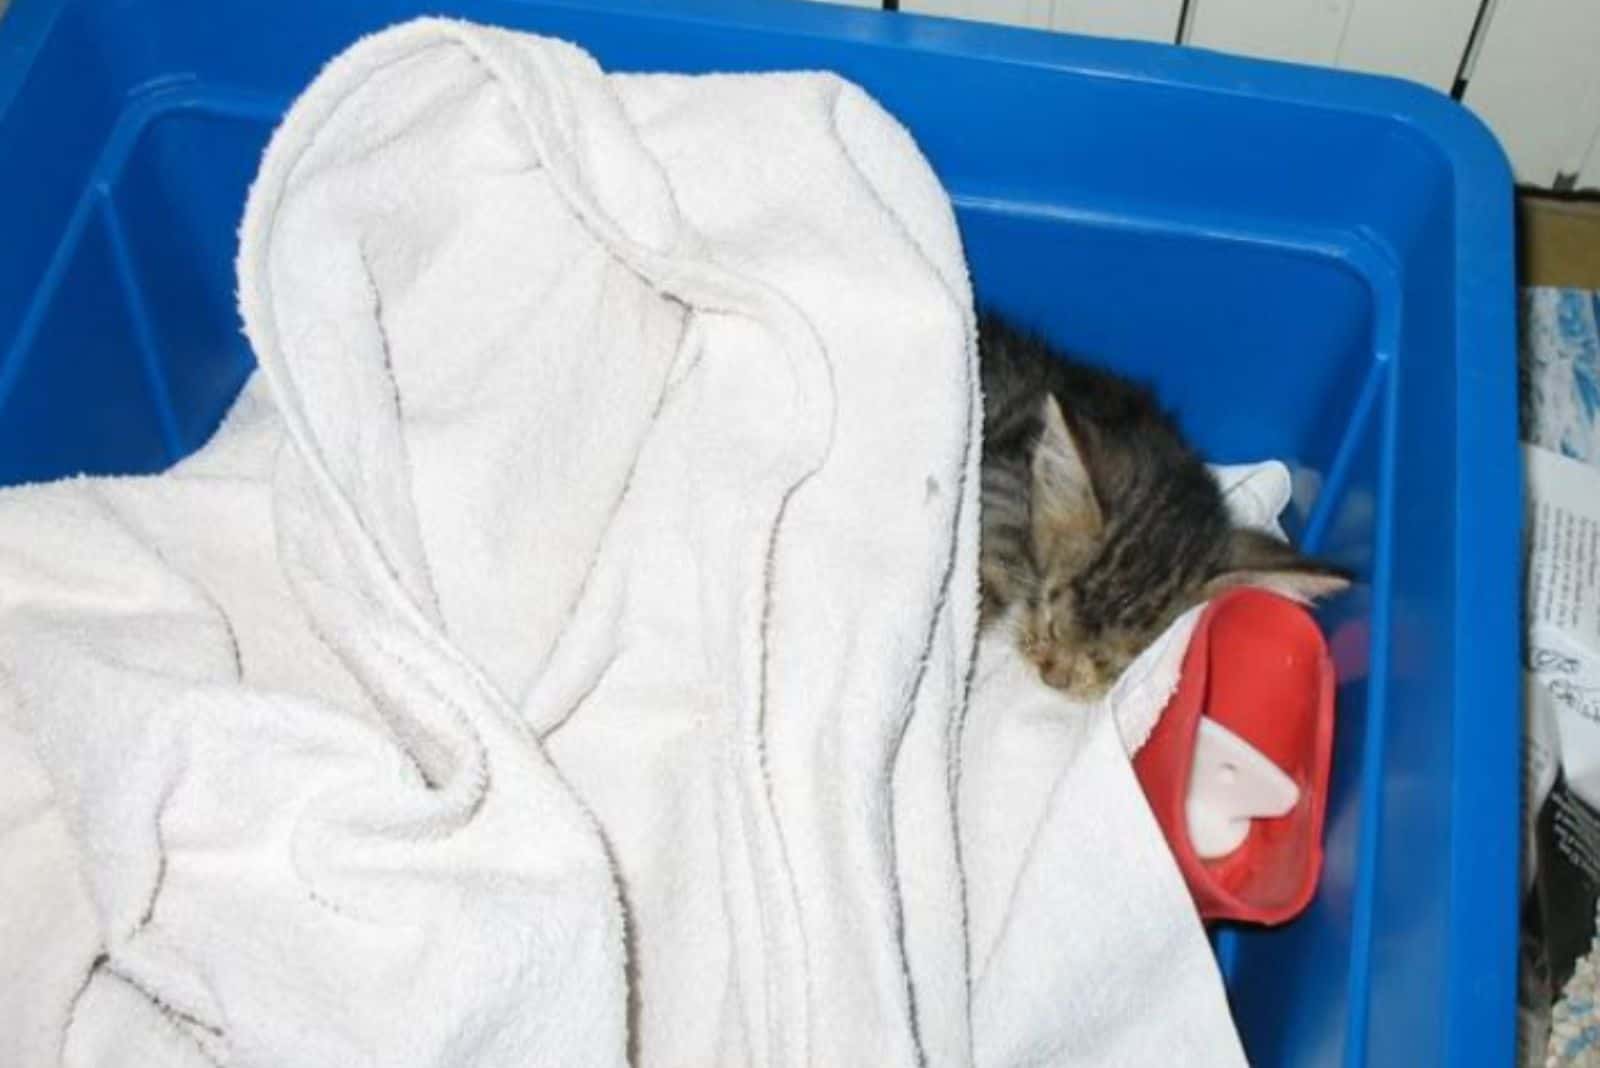 the rescued kitten sleeps in a box